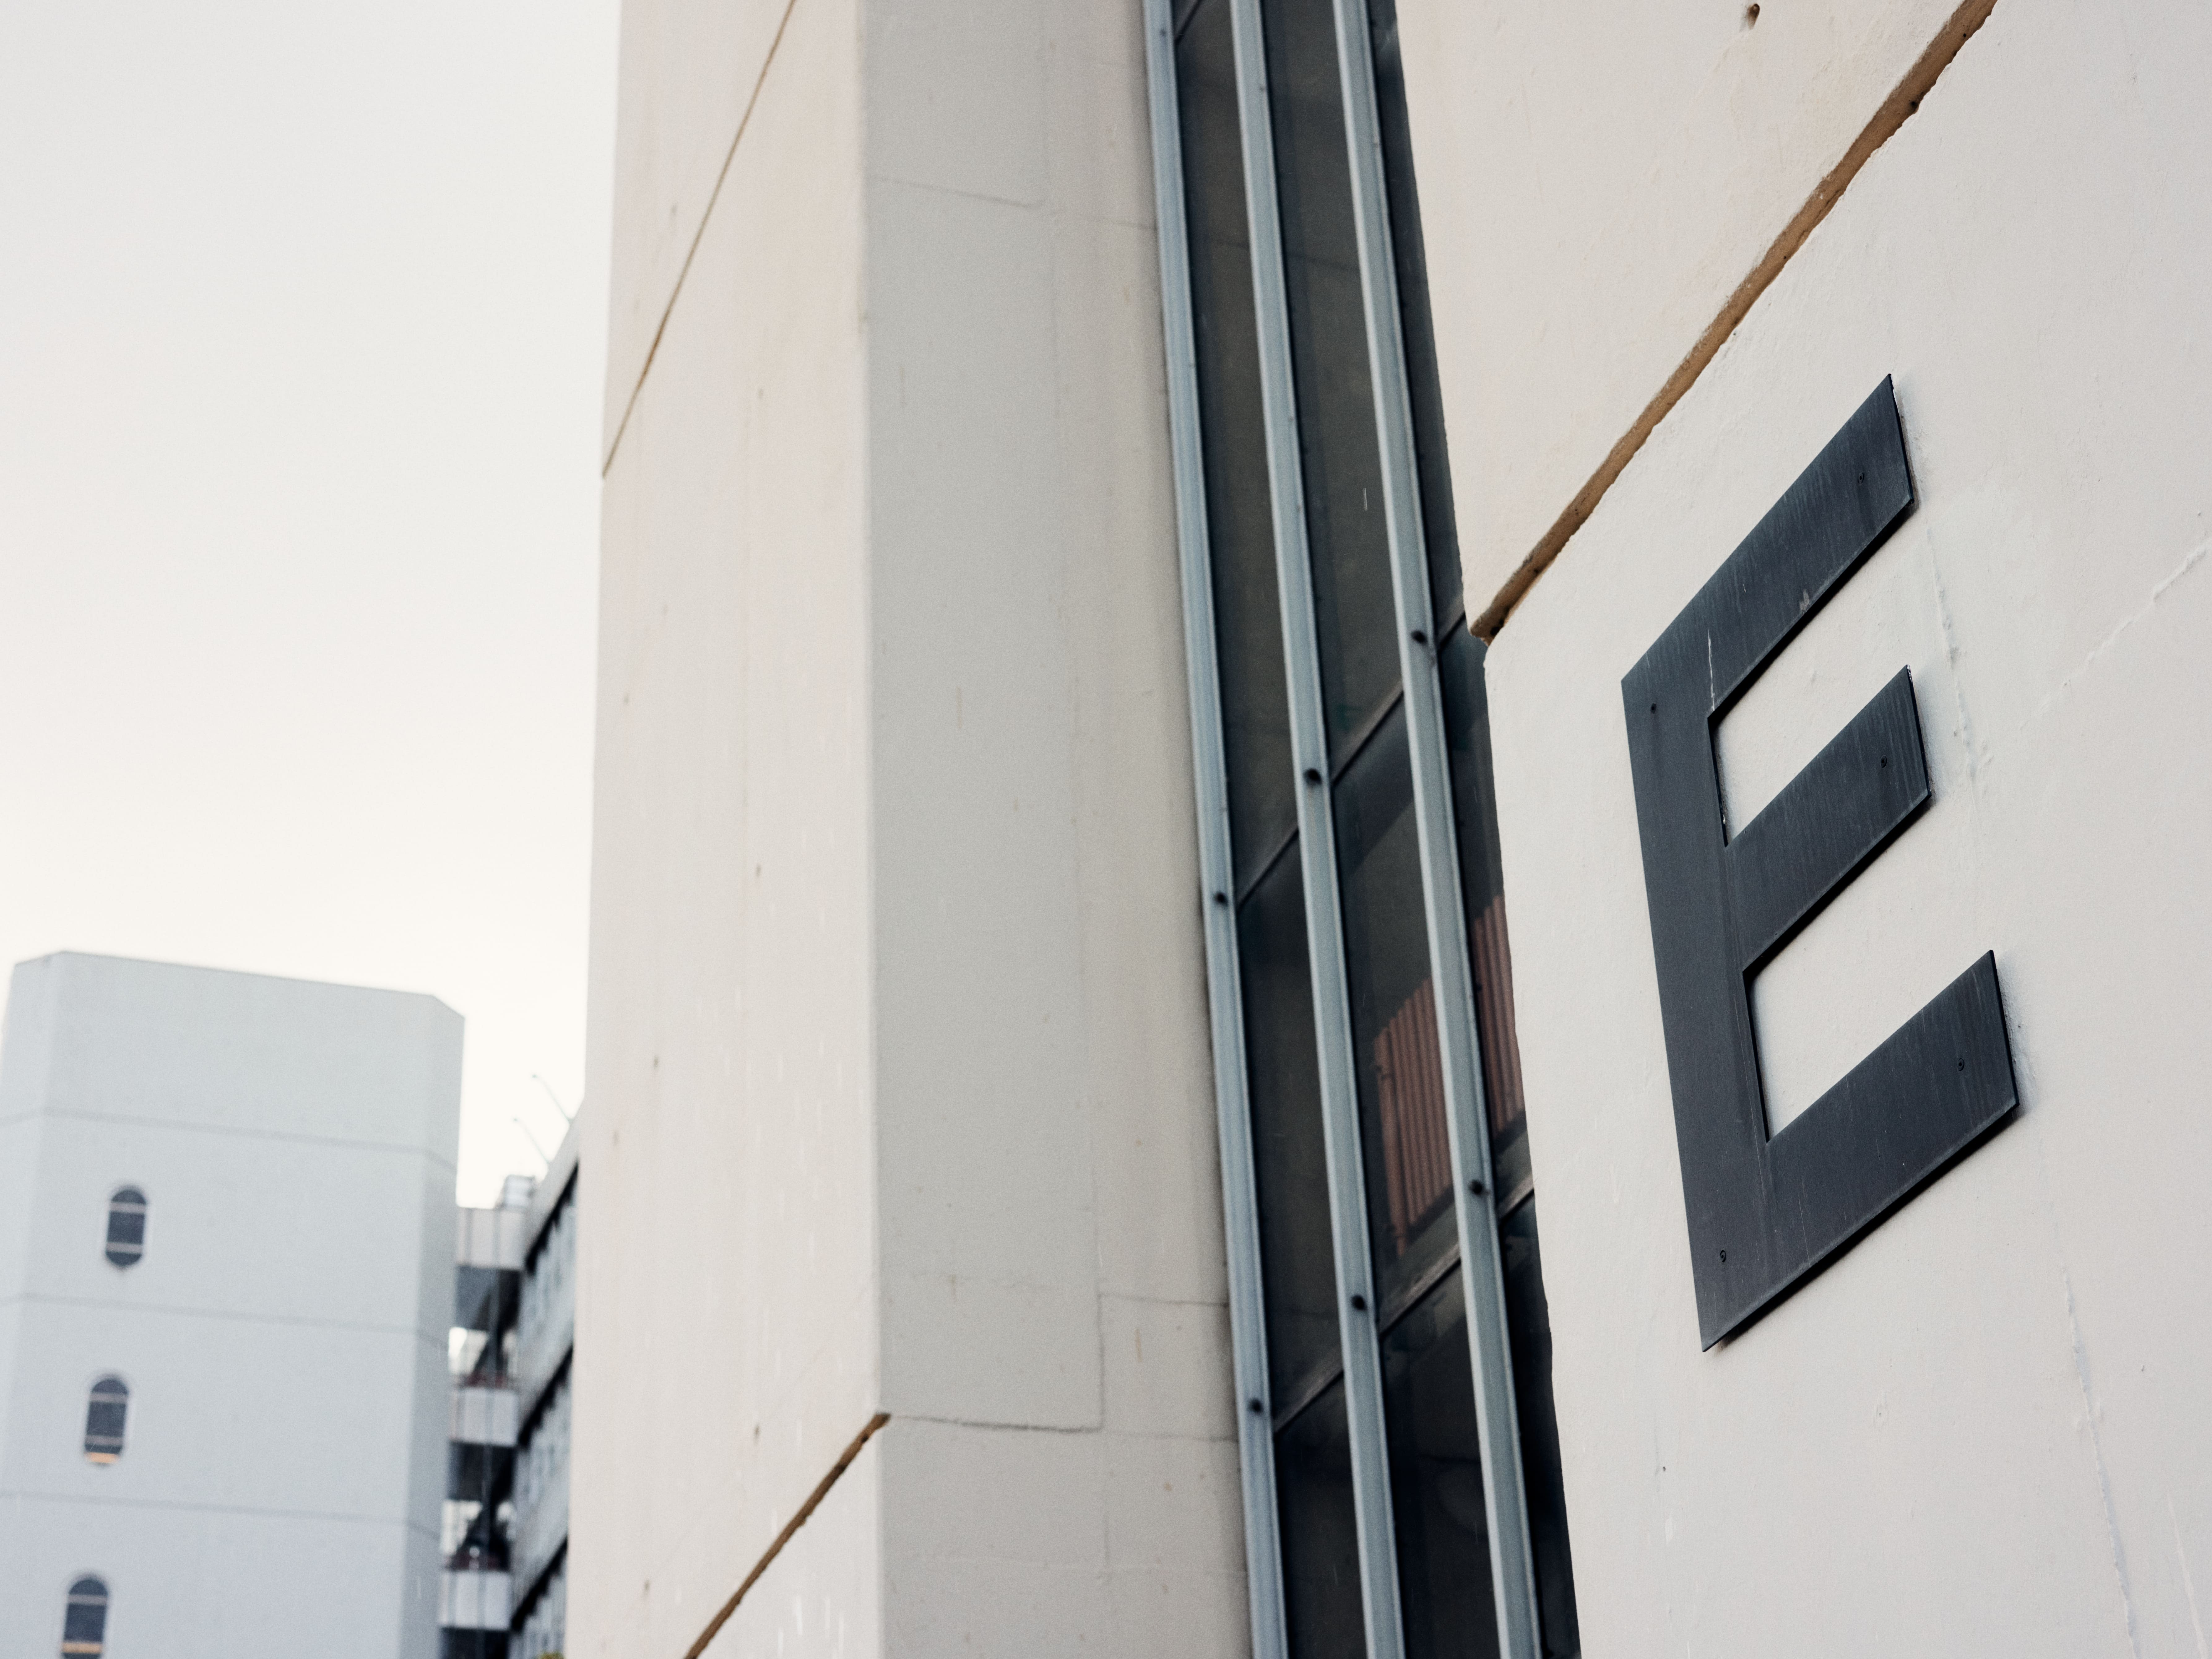 Der Buchstrabe E (für Energiegeld) an einem Turm der Universität Bielefeld 